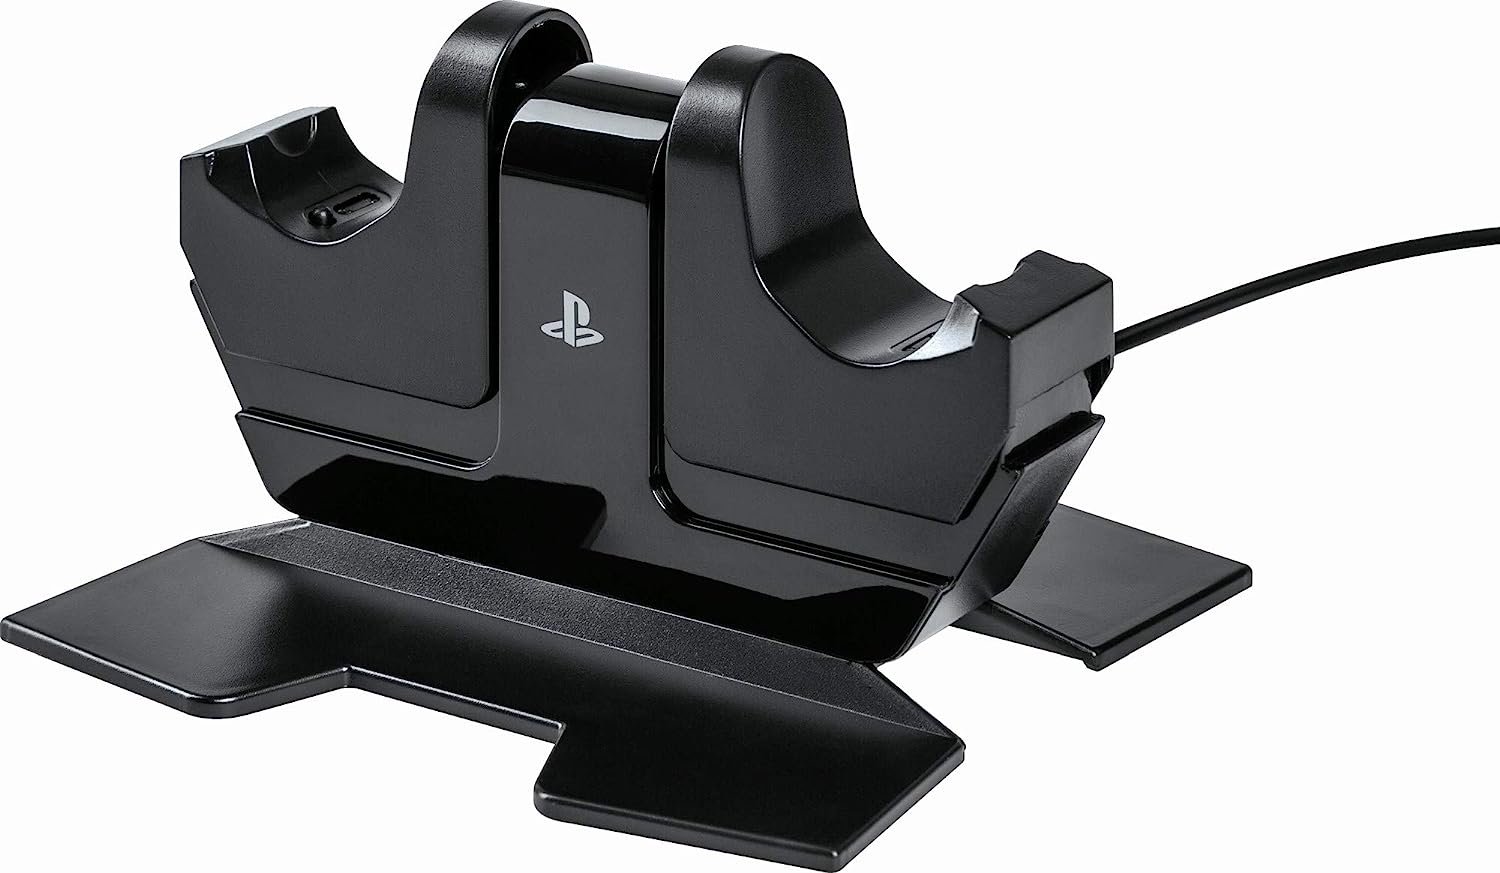  Estación de carga para controlador PS4, estación de carga para  controlador de PS4 OIVO de 1.8 horas, estación de carga de repuesto para cargador  Playstation 4 Dualshock 4 : Videojuegos